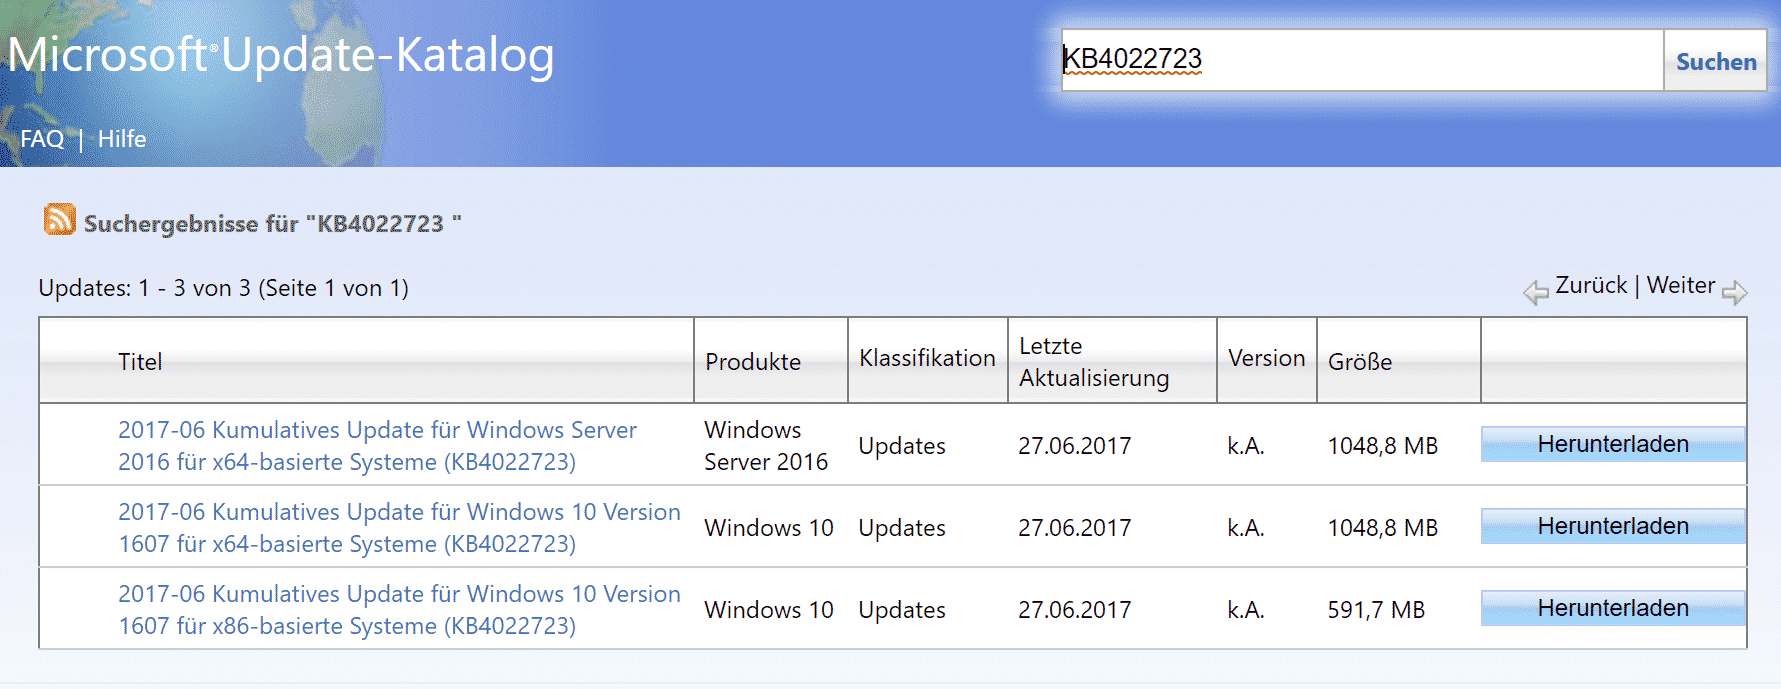 KB4022723 für Windows 10 Version 1607 Anniversary erschienen (Build 14393.1378)